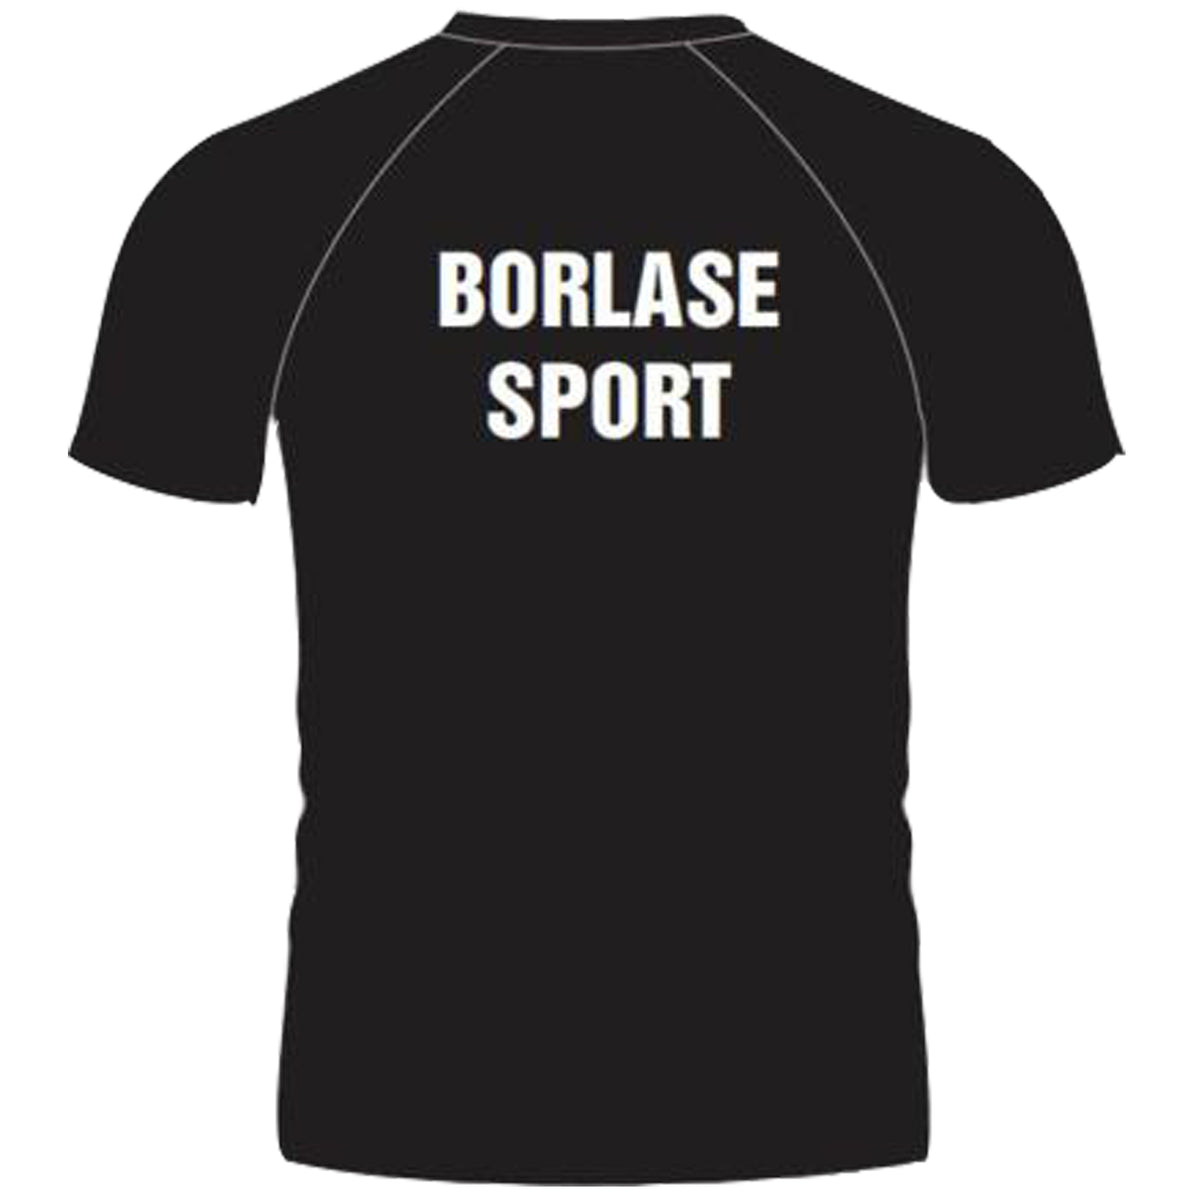 Sir William Borlase Grammar School 6th Form Tshirt